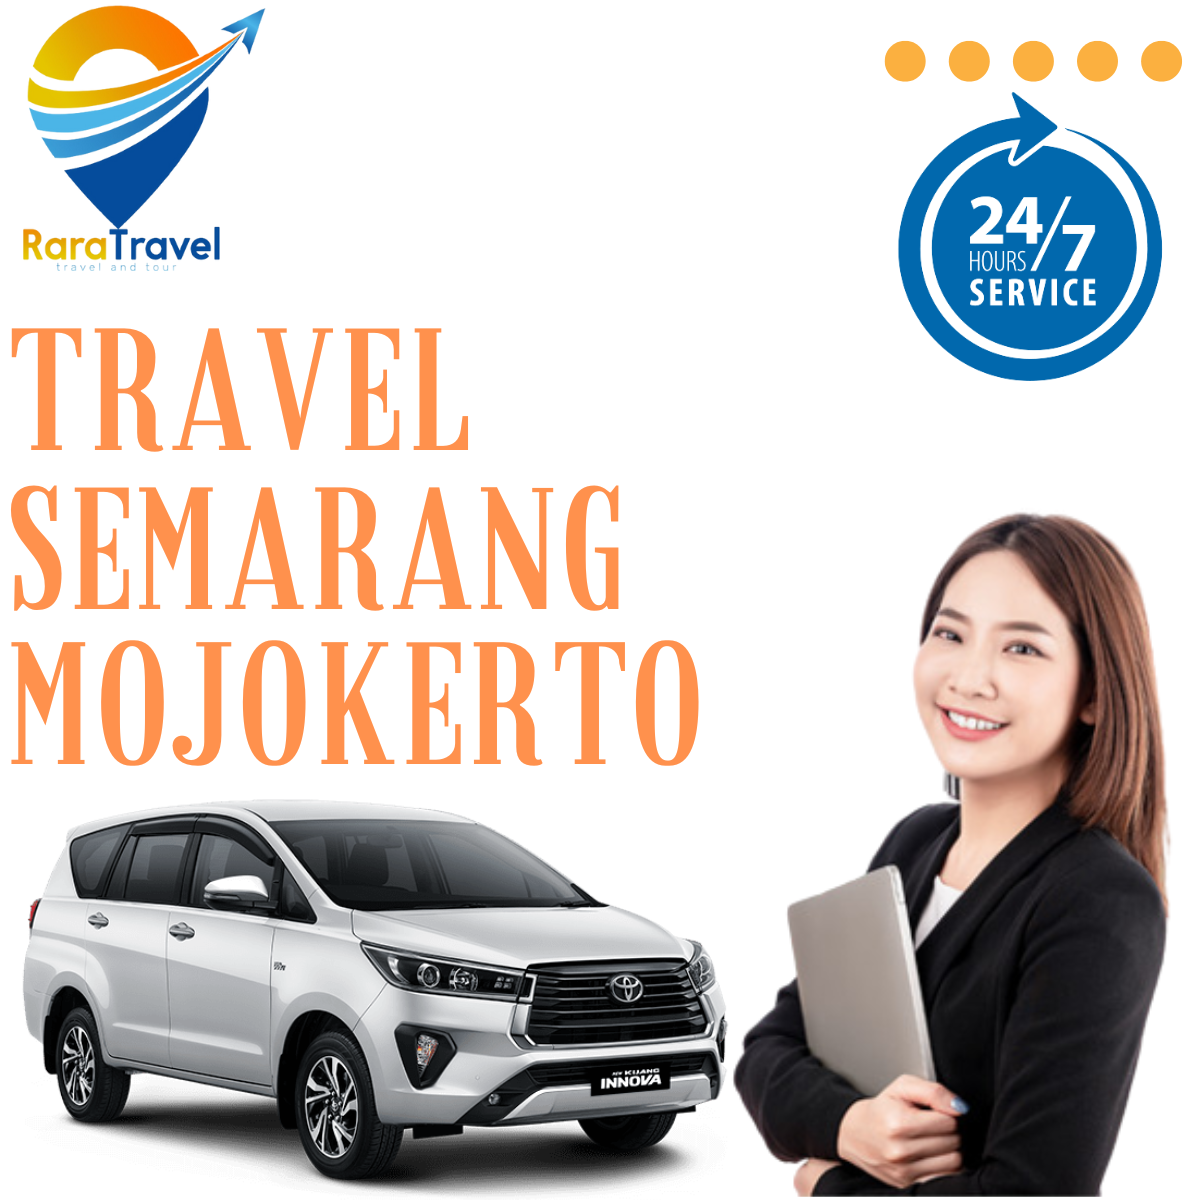 Travel Semarang Mojokerto PP Murah - RARATRAVEL.ID